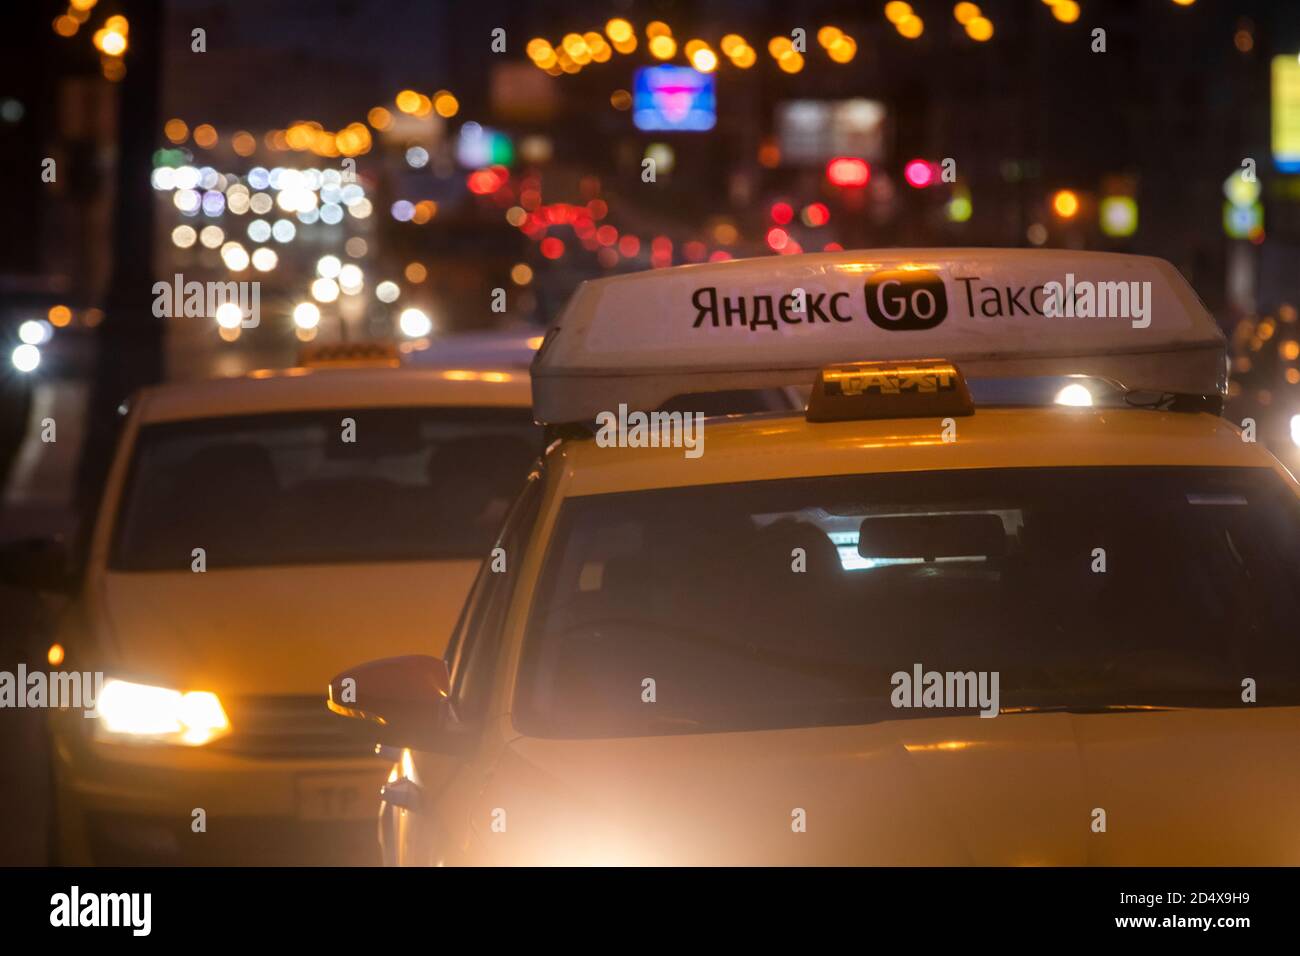 Gelbes Taxi mit Banner "Yandex Taxi" auf Türen eines Autos wartet auf den Passagier in der Nacht Straße im Zentrum von Moskau, Russland Stockfoto